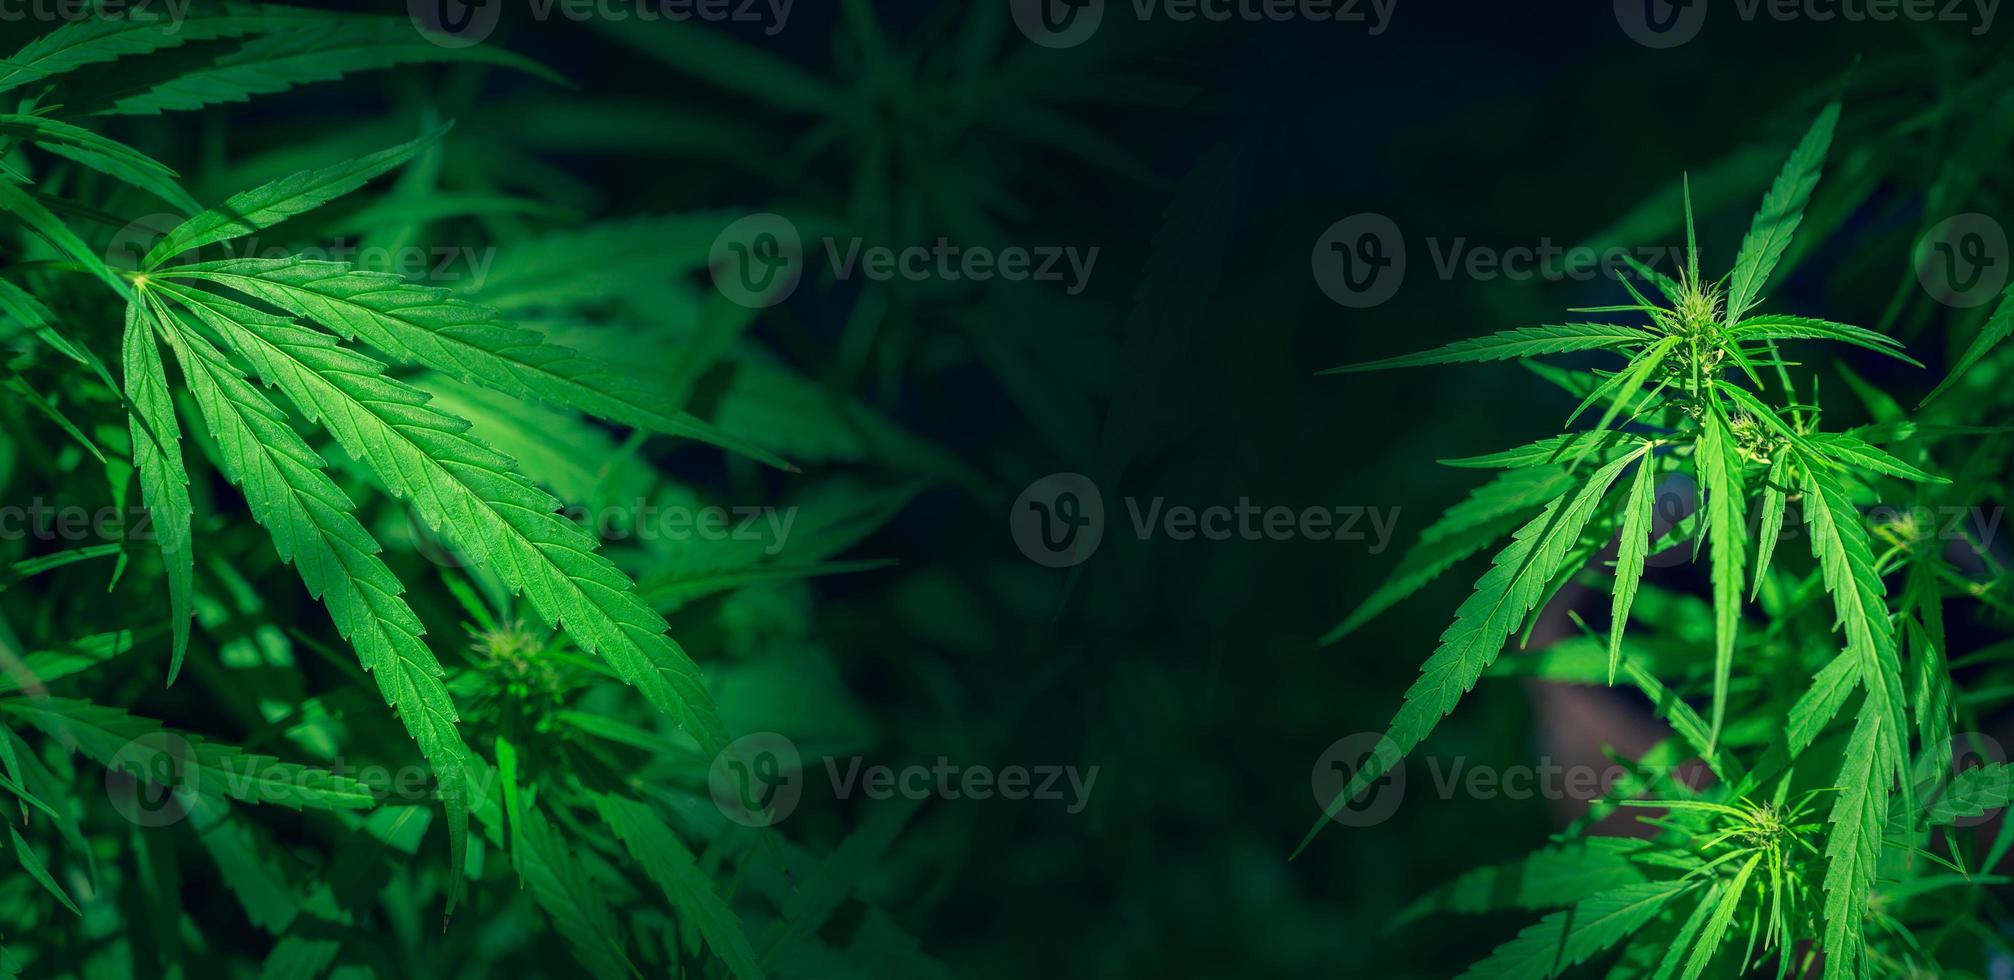 grüner Hanfblatt-Marihuana-Hintergrund Folhas de Maconha Cannabis foto